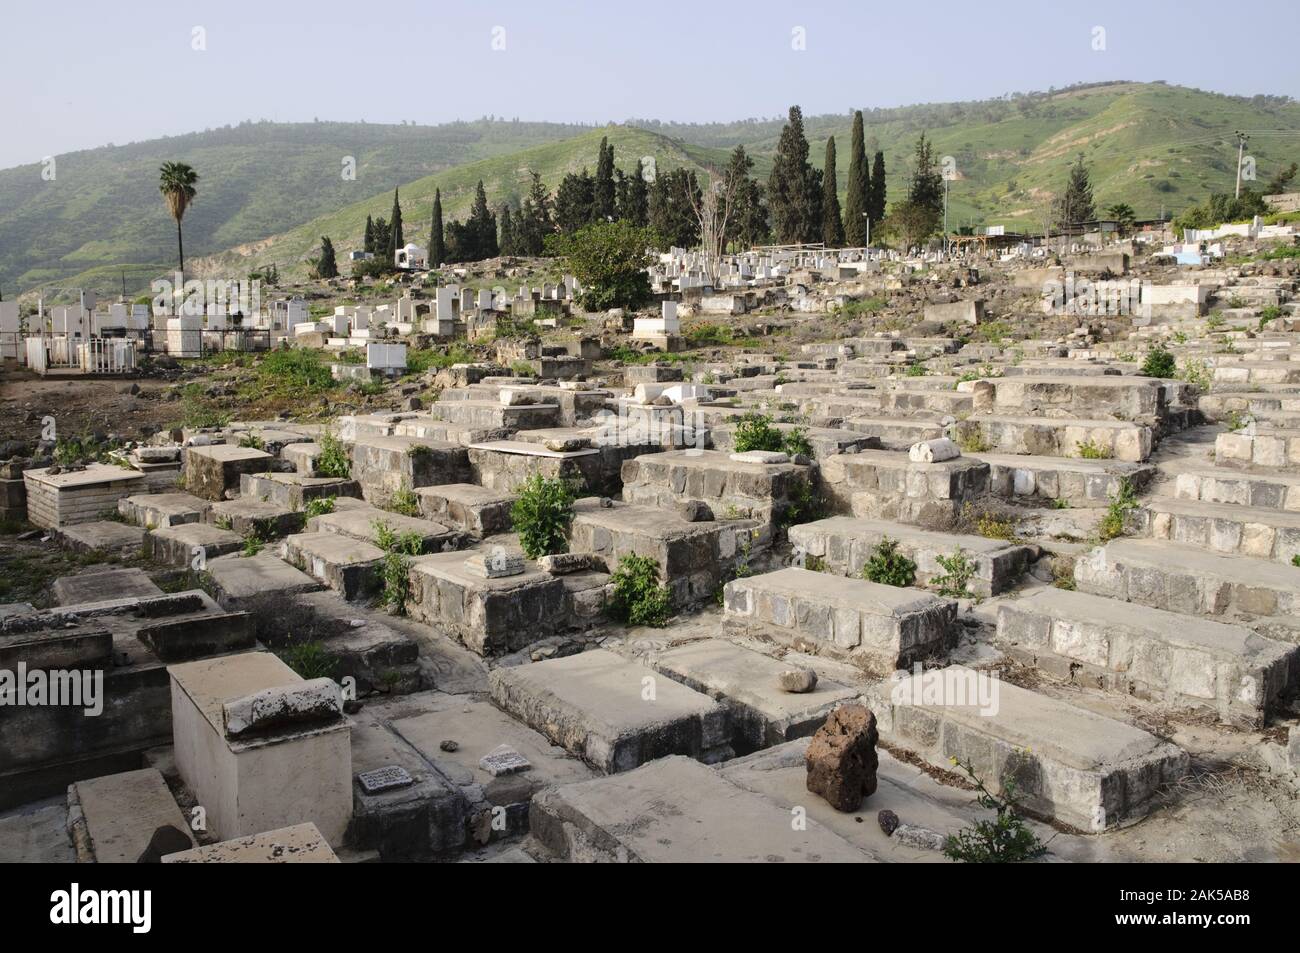 Juedischer Friedhof am See Genezareth, Israel | usage worldwide Stock Photo